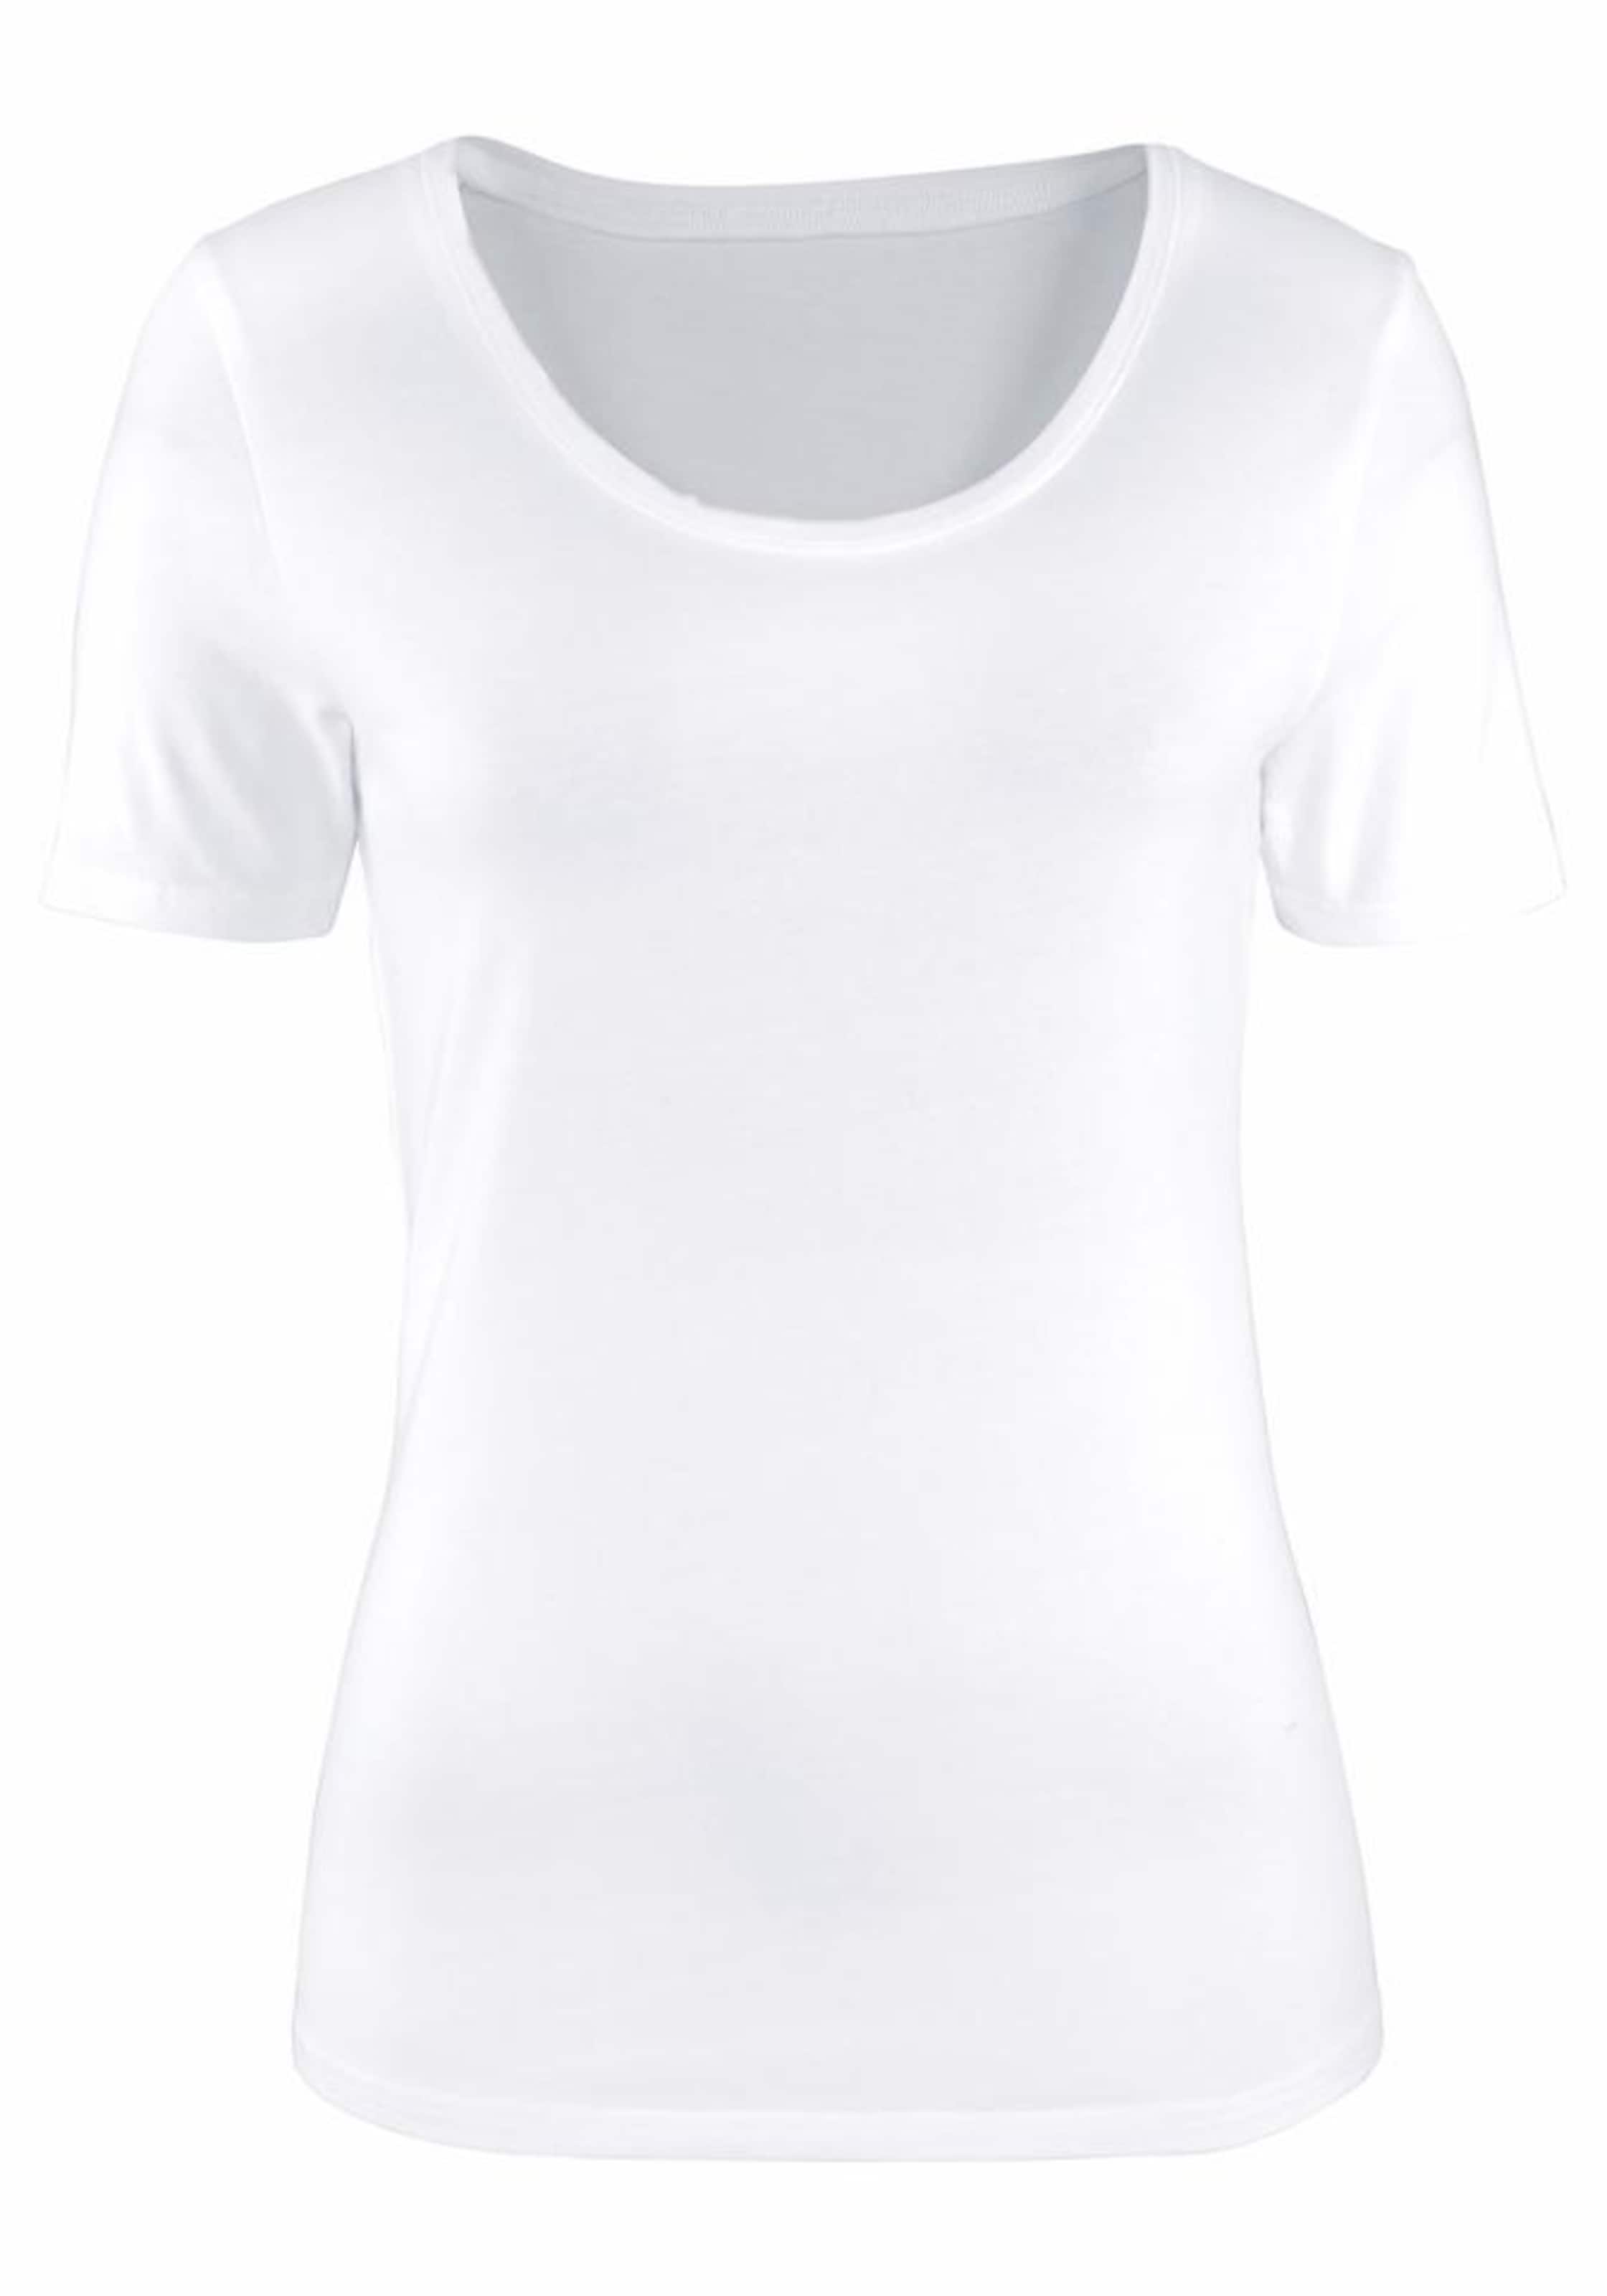 VIVANCE T-Shirts (2 Stück) in Schwarz, Weiß 